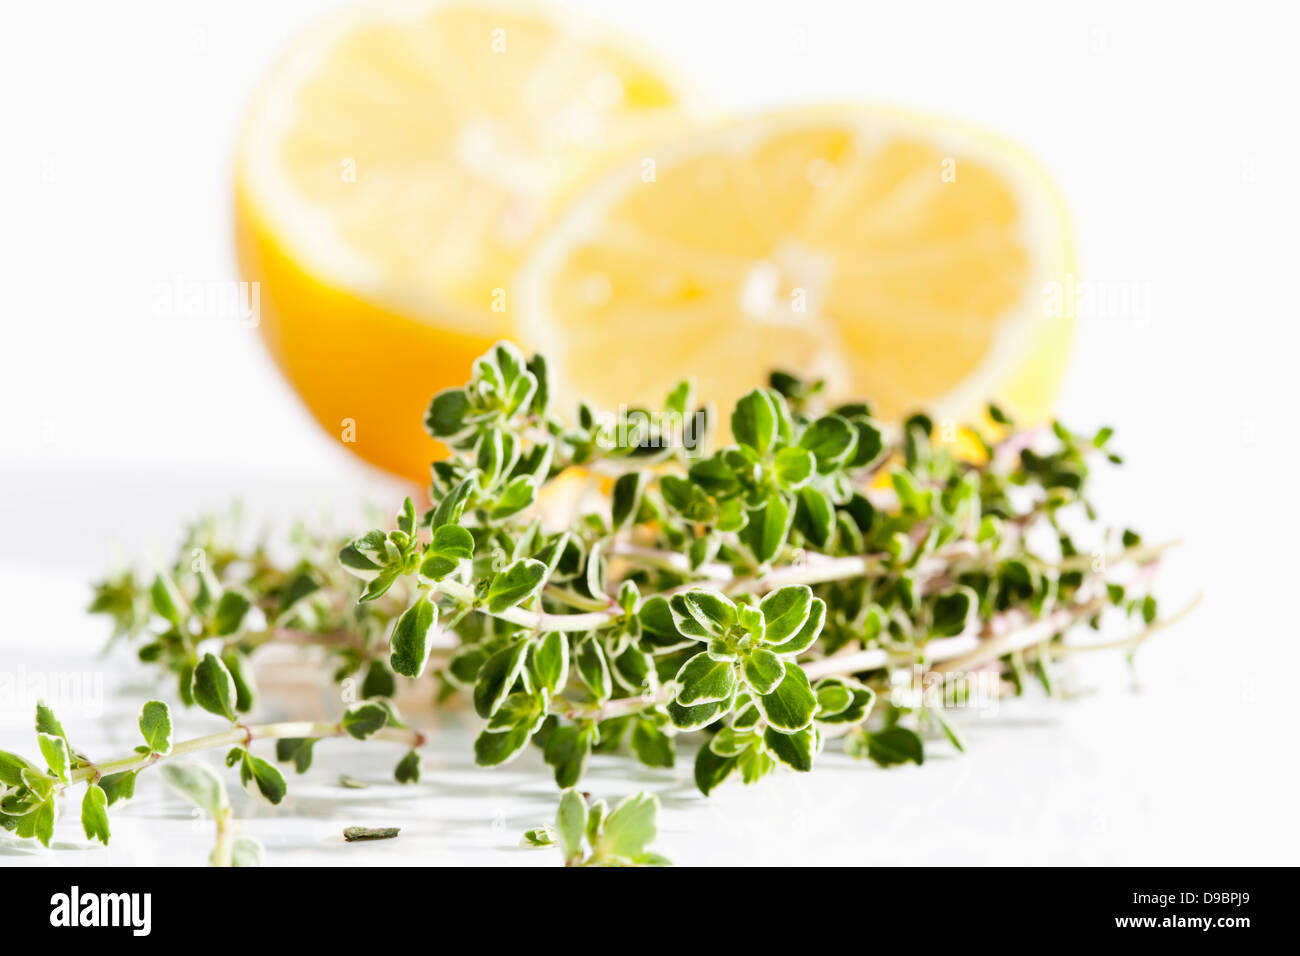 Lemon thyme with lemons on white background, close up Stock Photo